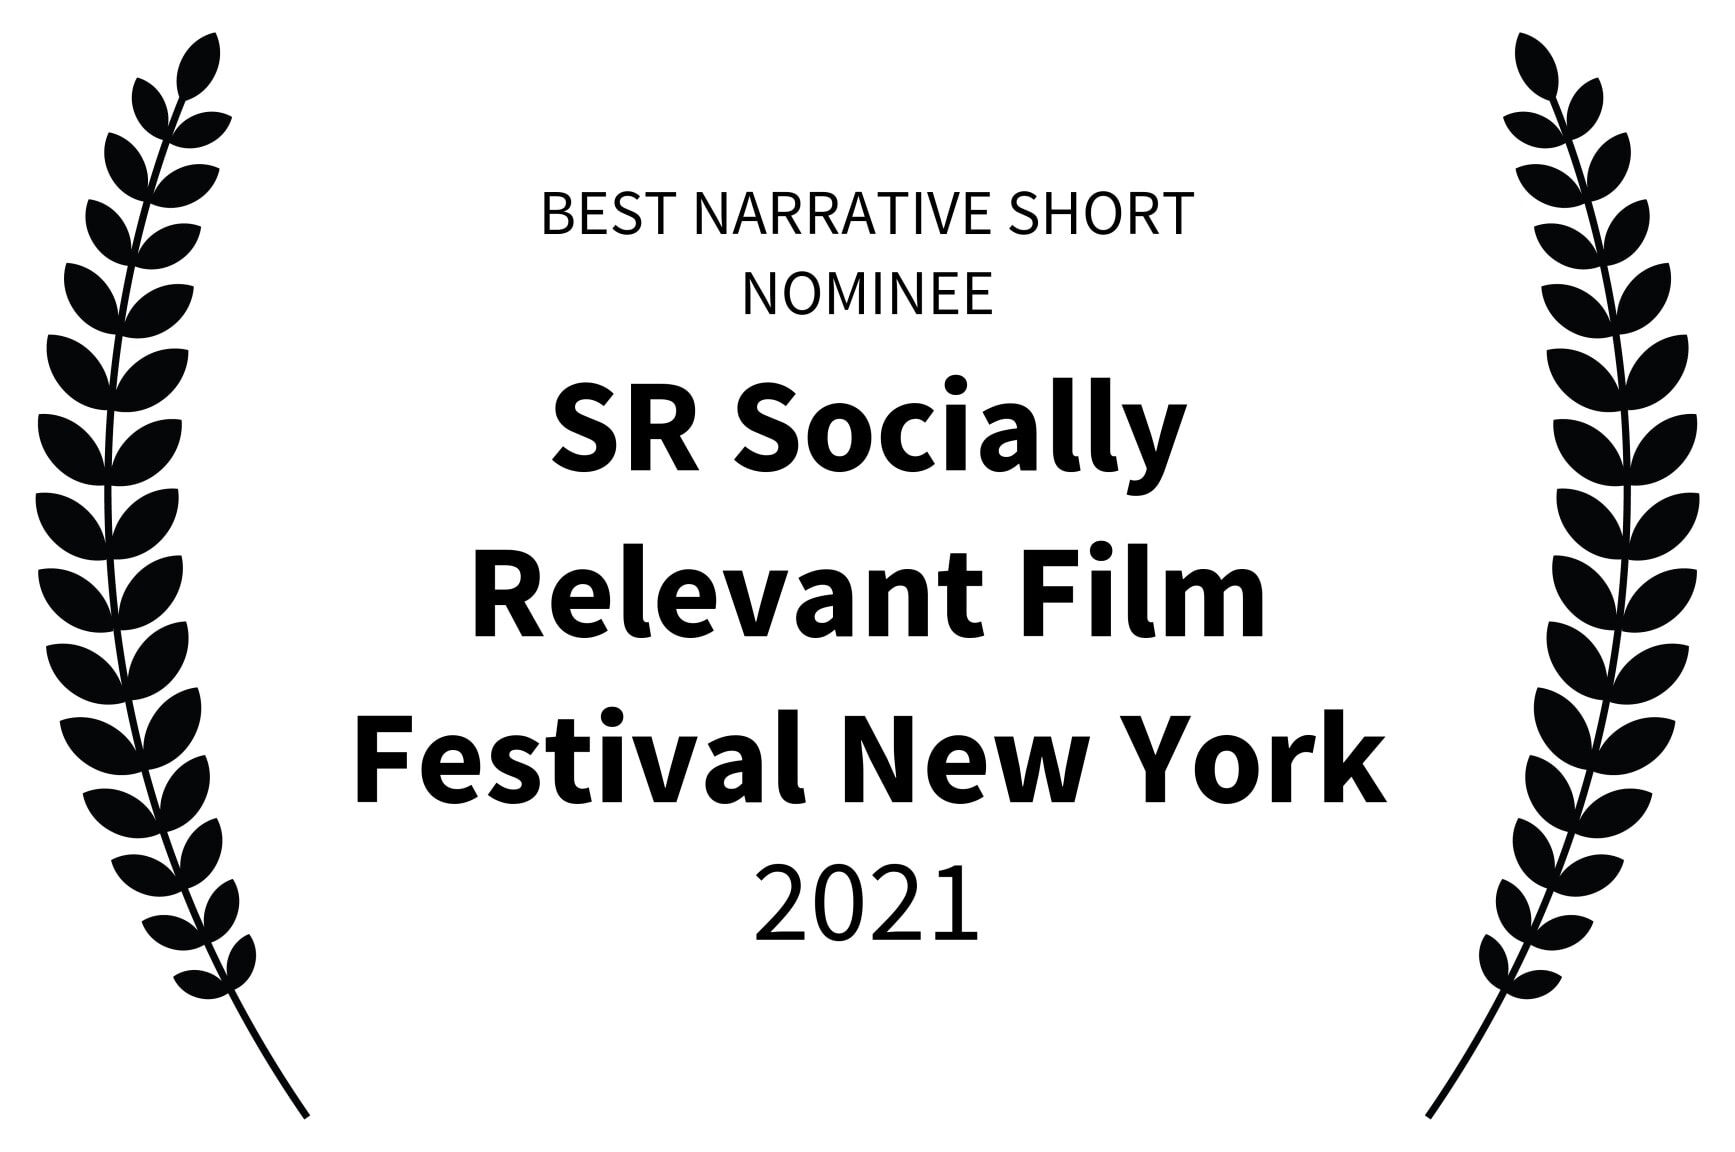 BEST NARRATIVE SHORT NOMINEE - SR Socially Relevant Film Festival New York - 2021